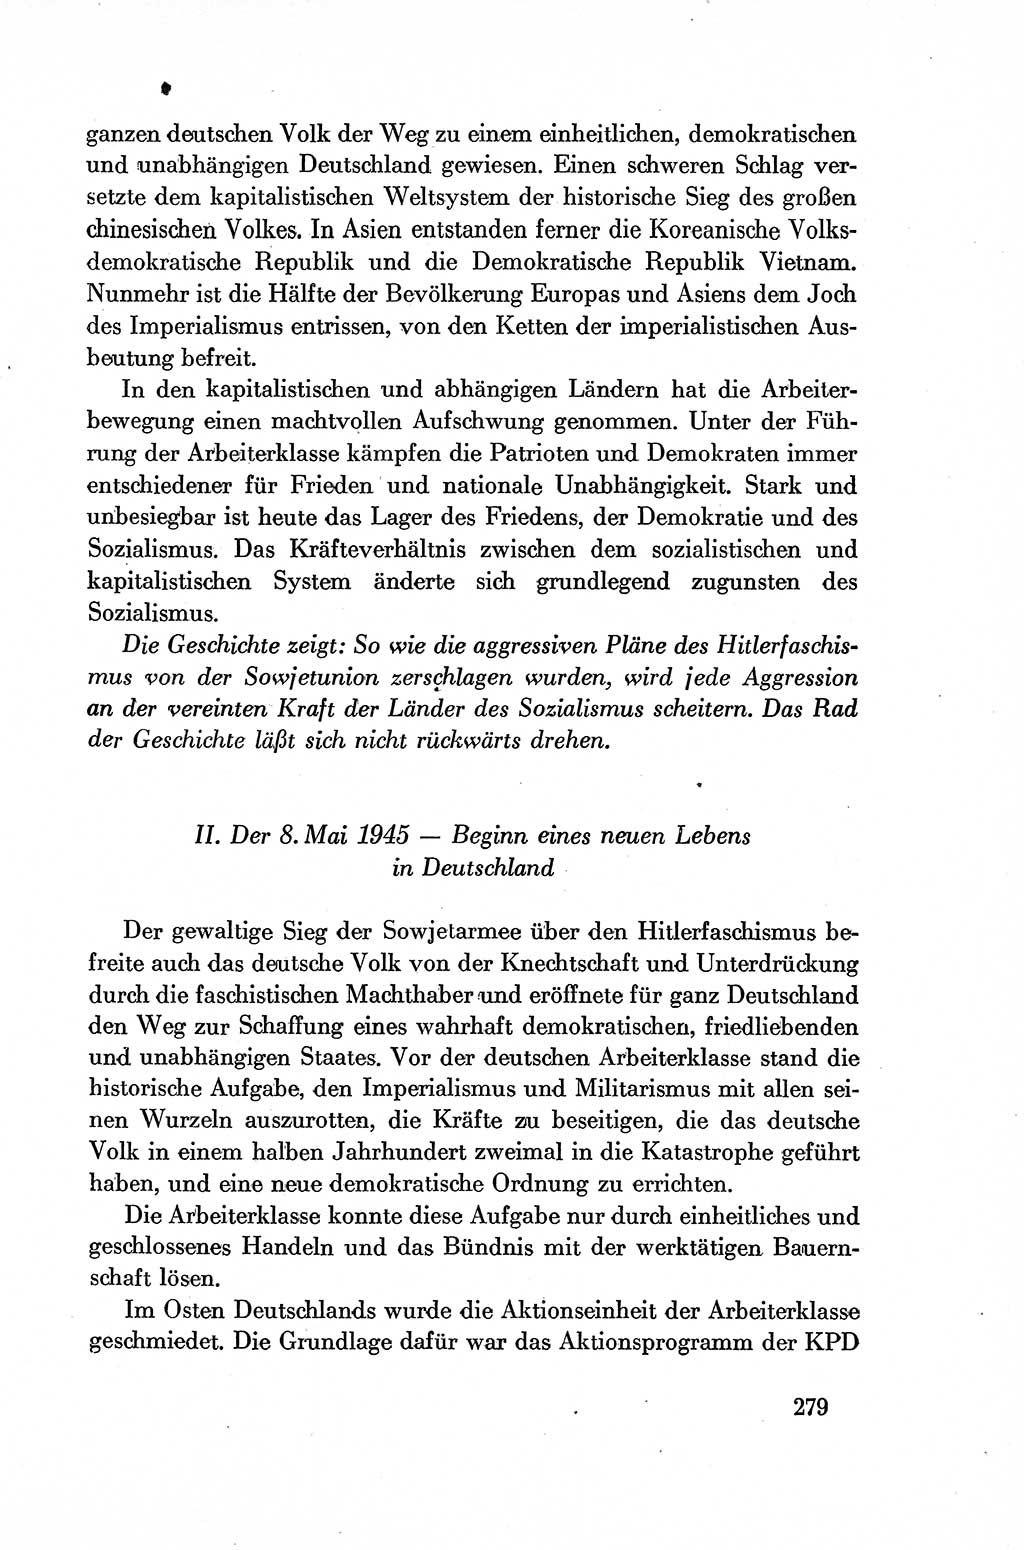 Dokumente der Sozialistischen Einheitspartei Deutschlands (SED) [Deutsche Demokratische Republik (DDR)] 1954-1955, Seite 279 (Dok. SED DDR 1954-1955, S. 279)